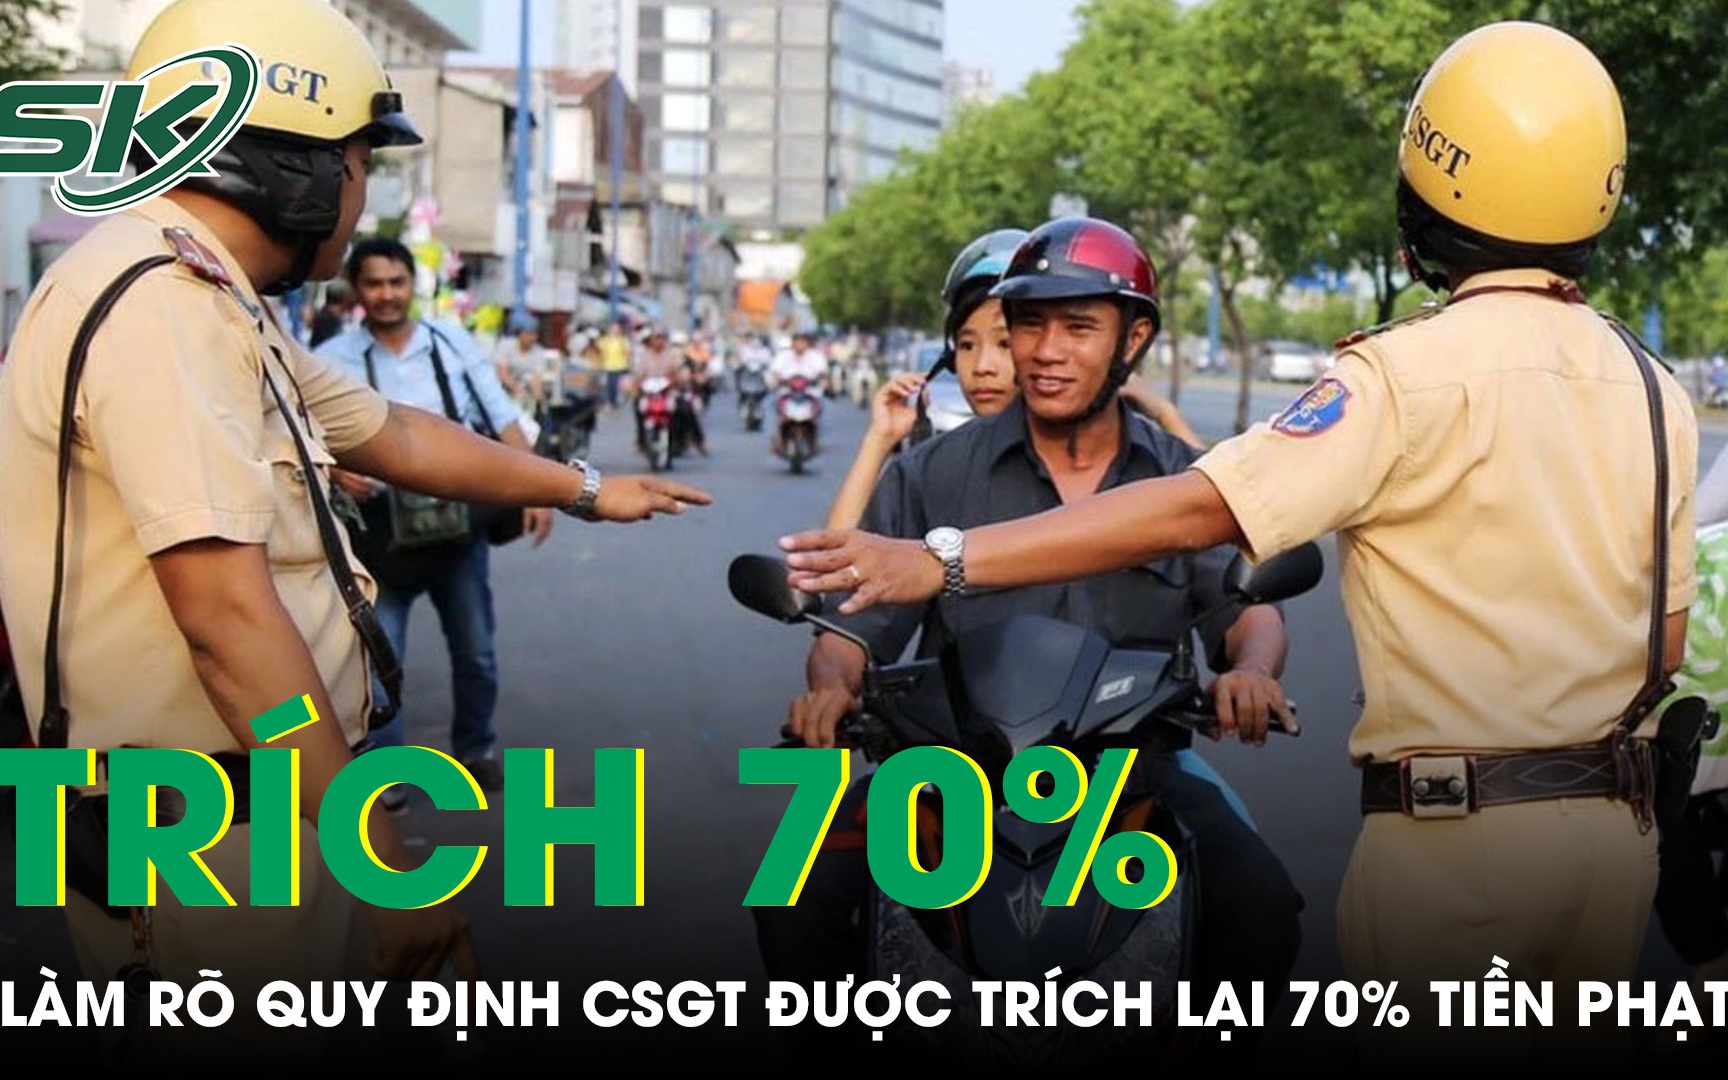 Đề nghị làm rõ quy định cảnh sát giao thông được trích lại 70% tiền xử phạt